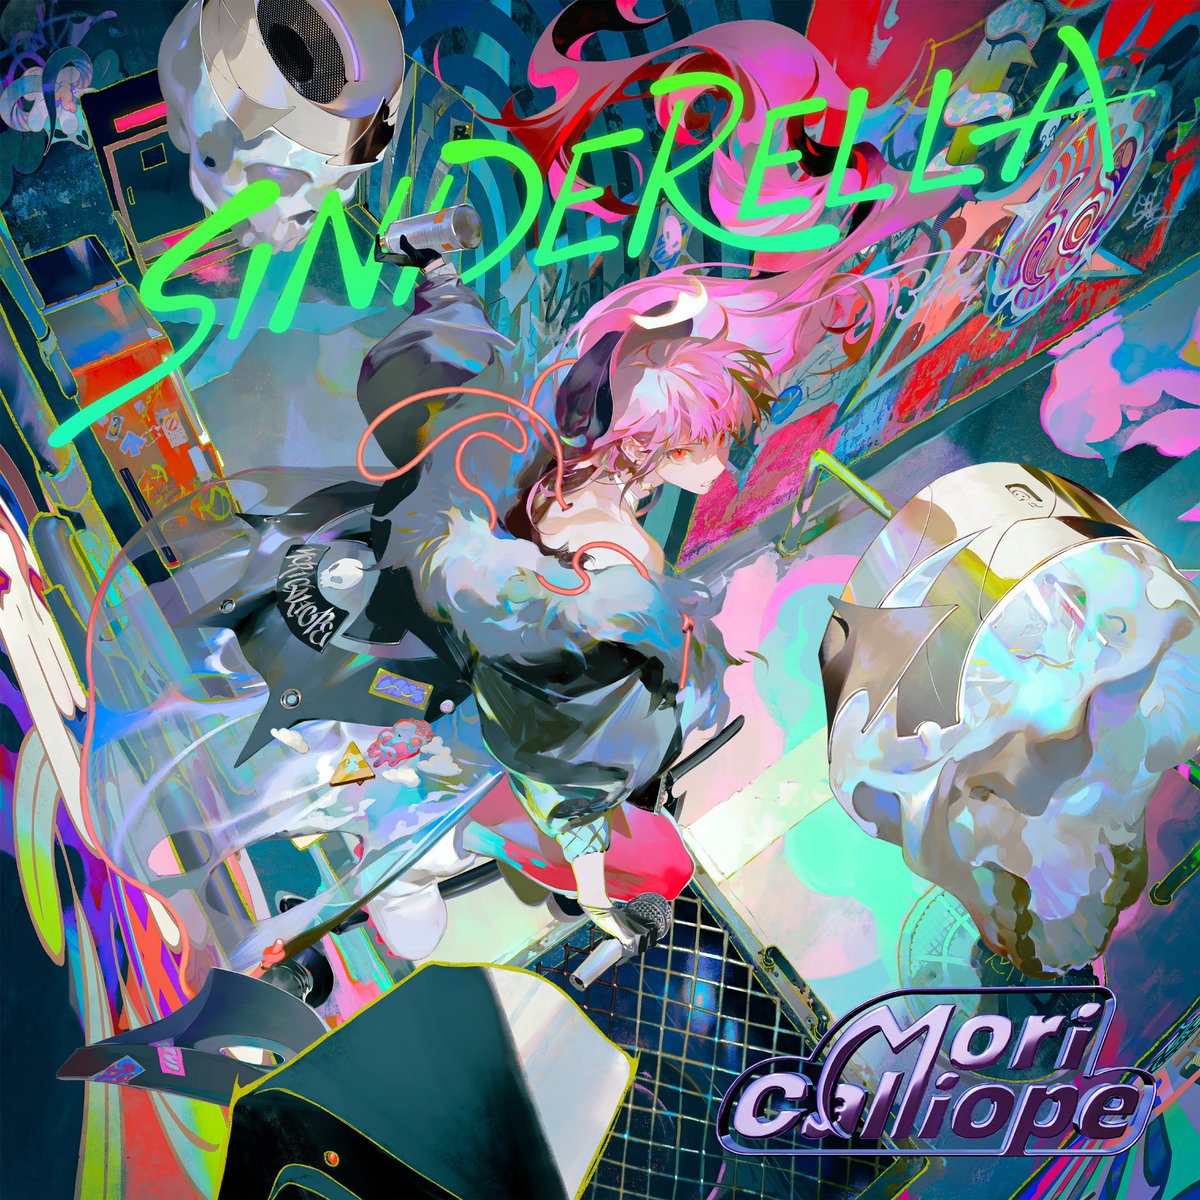 Cover art for『Mori Calliope - CRINGECORE』from the release『SINDERELLA